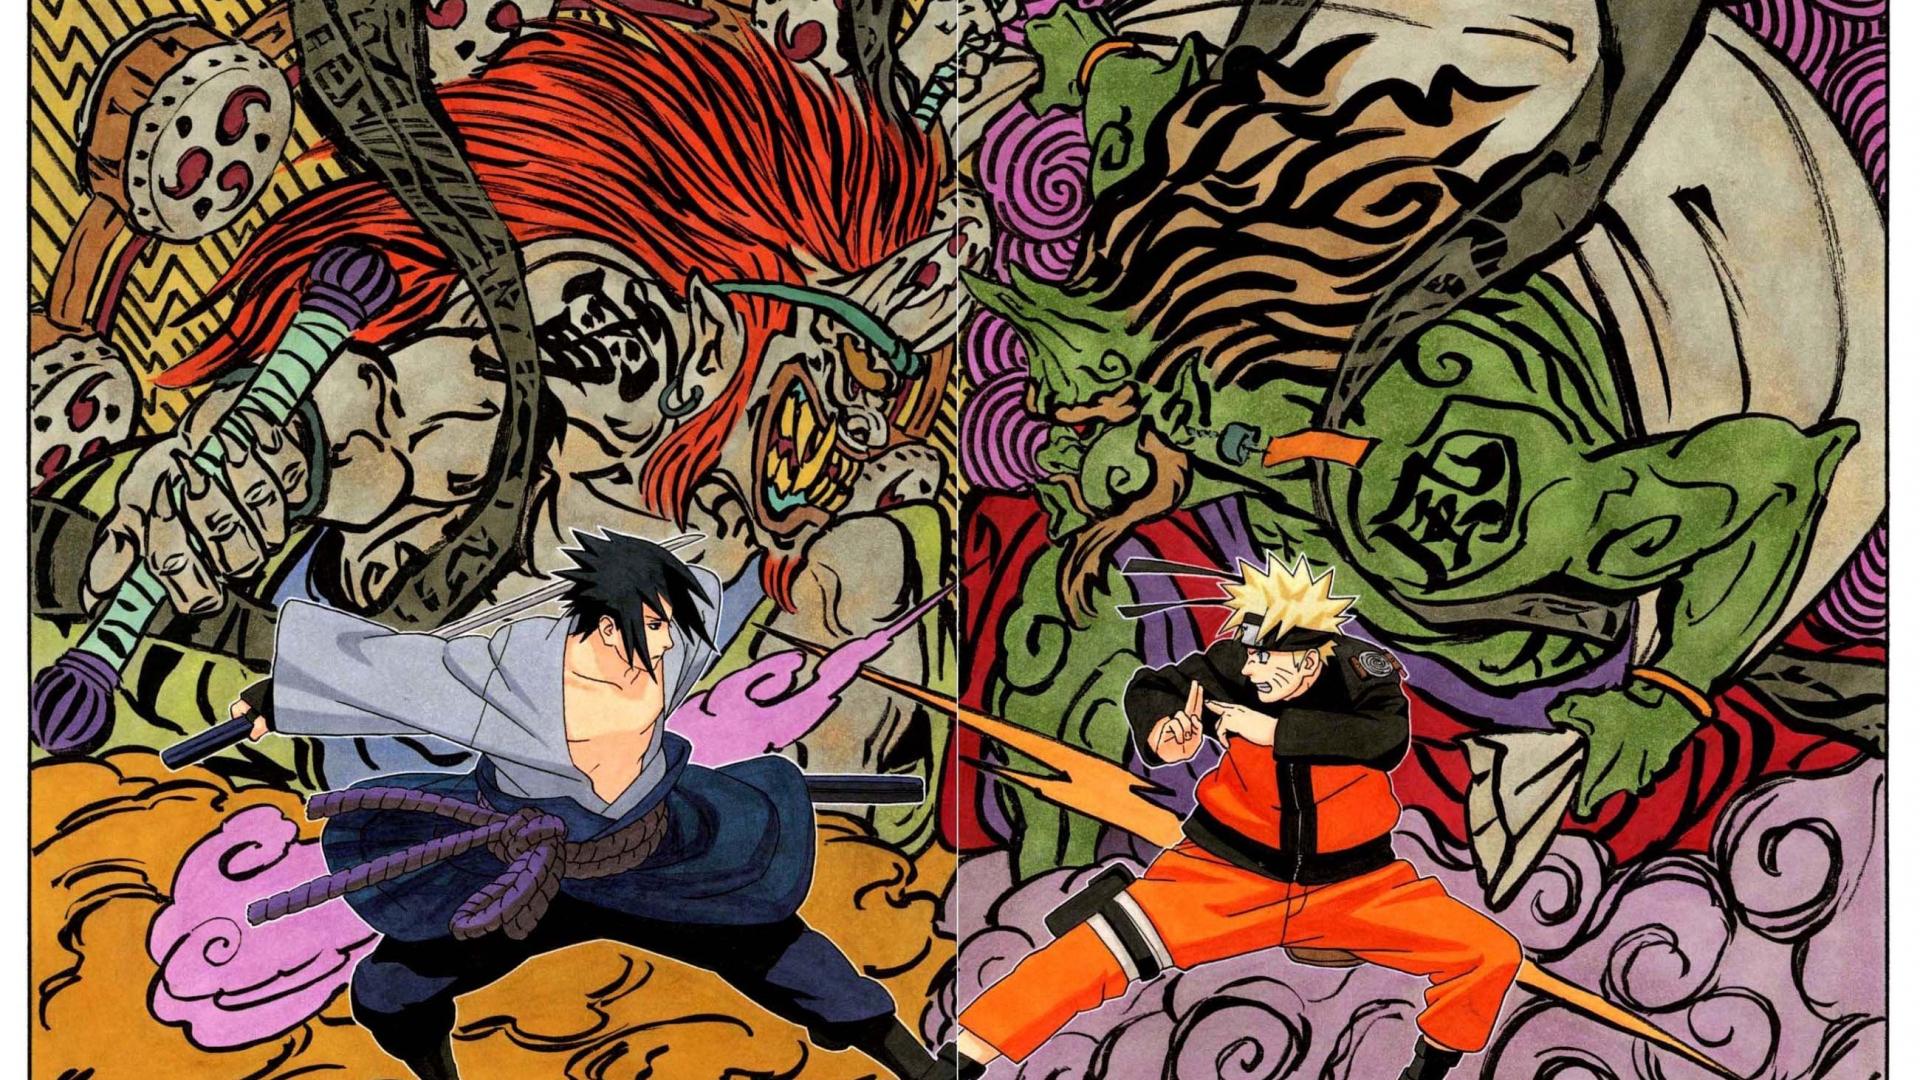 Manga Naruto Wallpapers - Wallpaper Cave